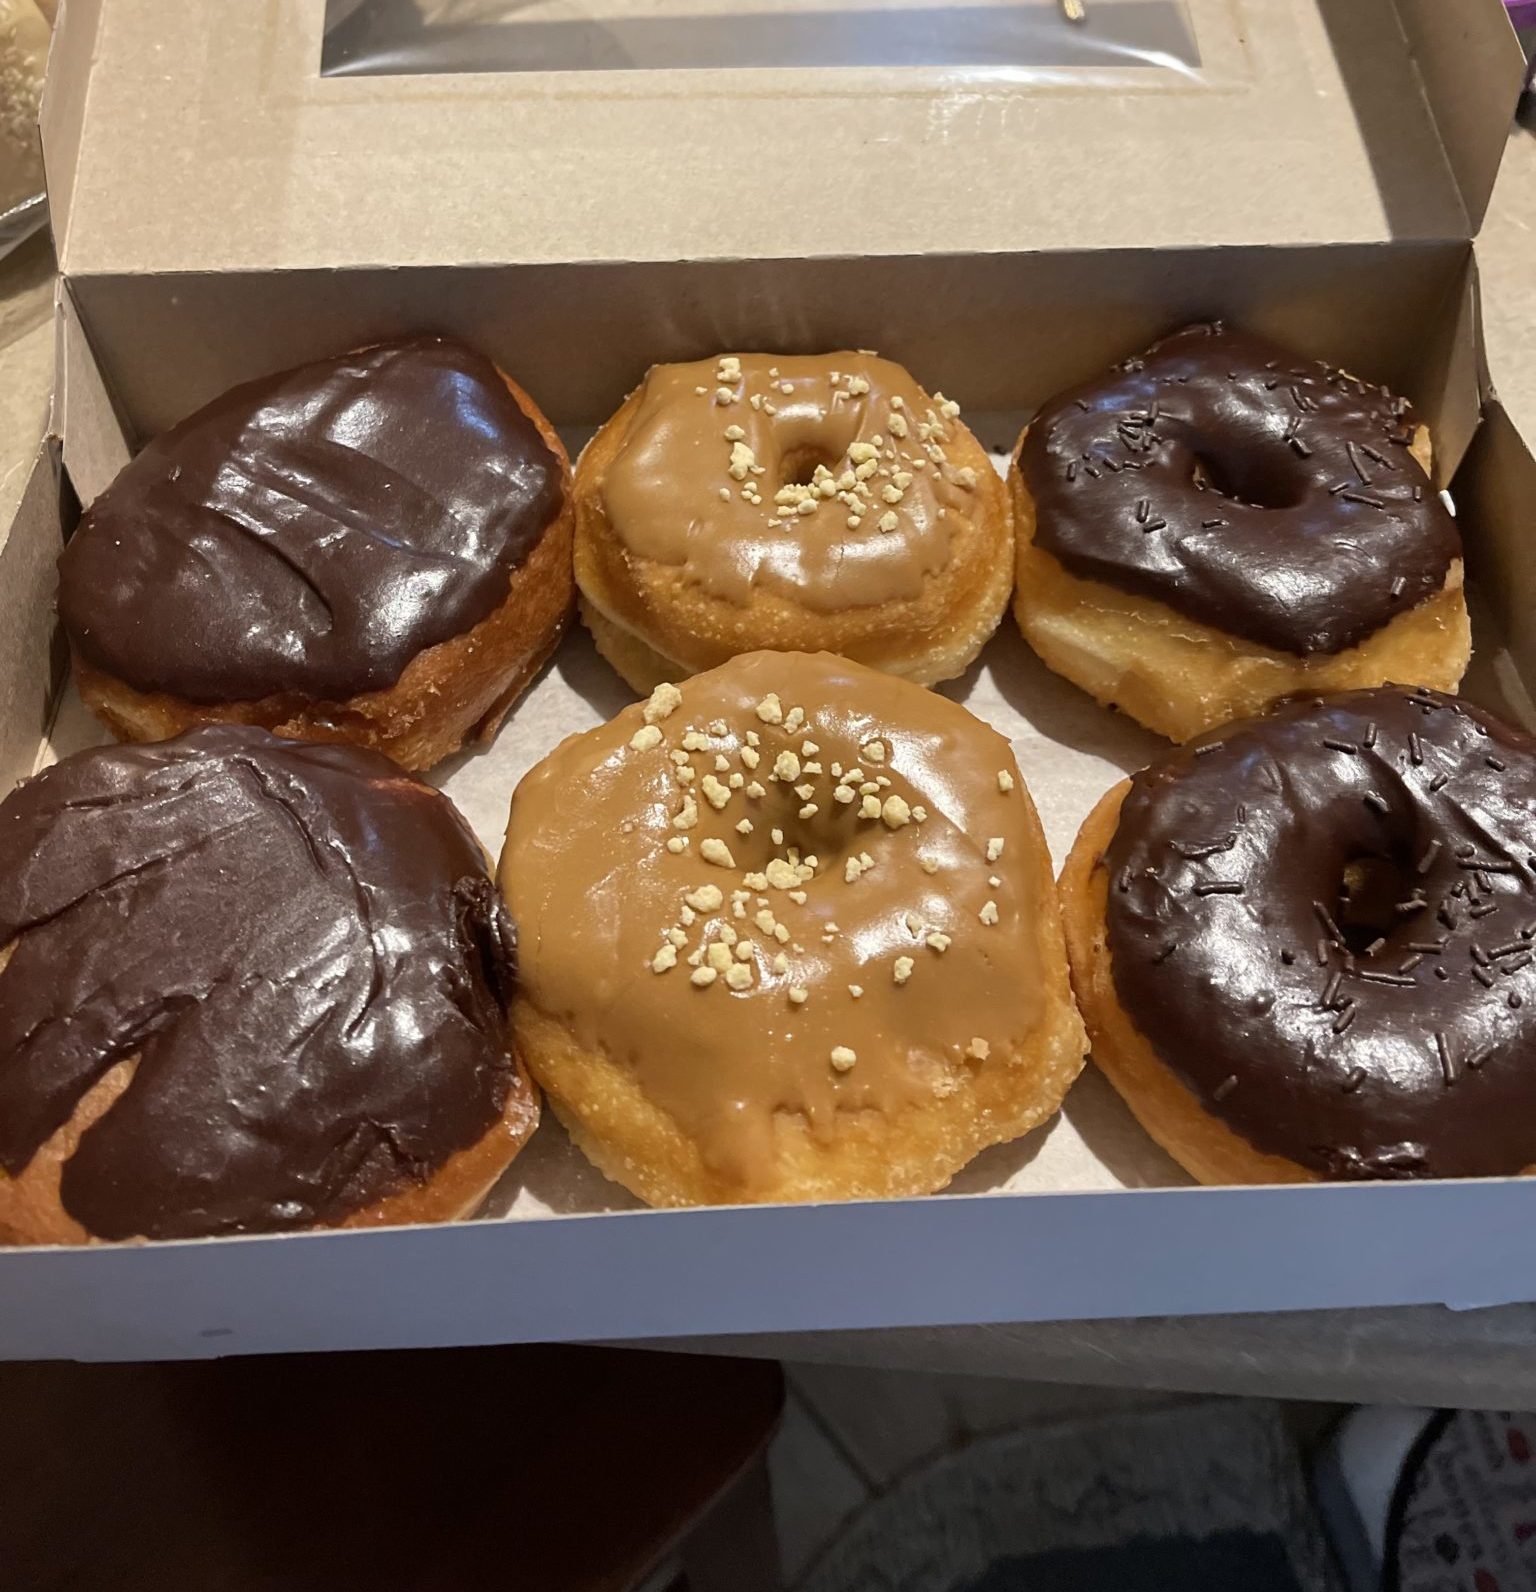 Bliss Baked Goods In Edmonton Review: Vegan Donuts